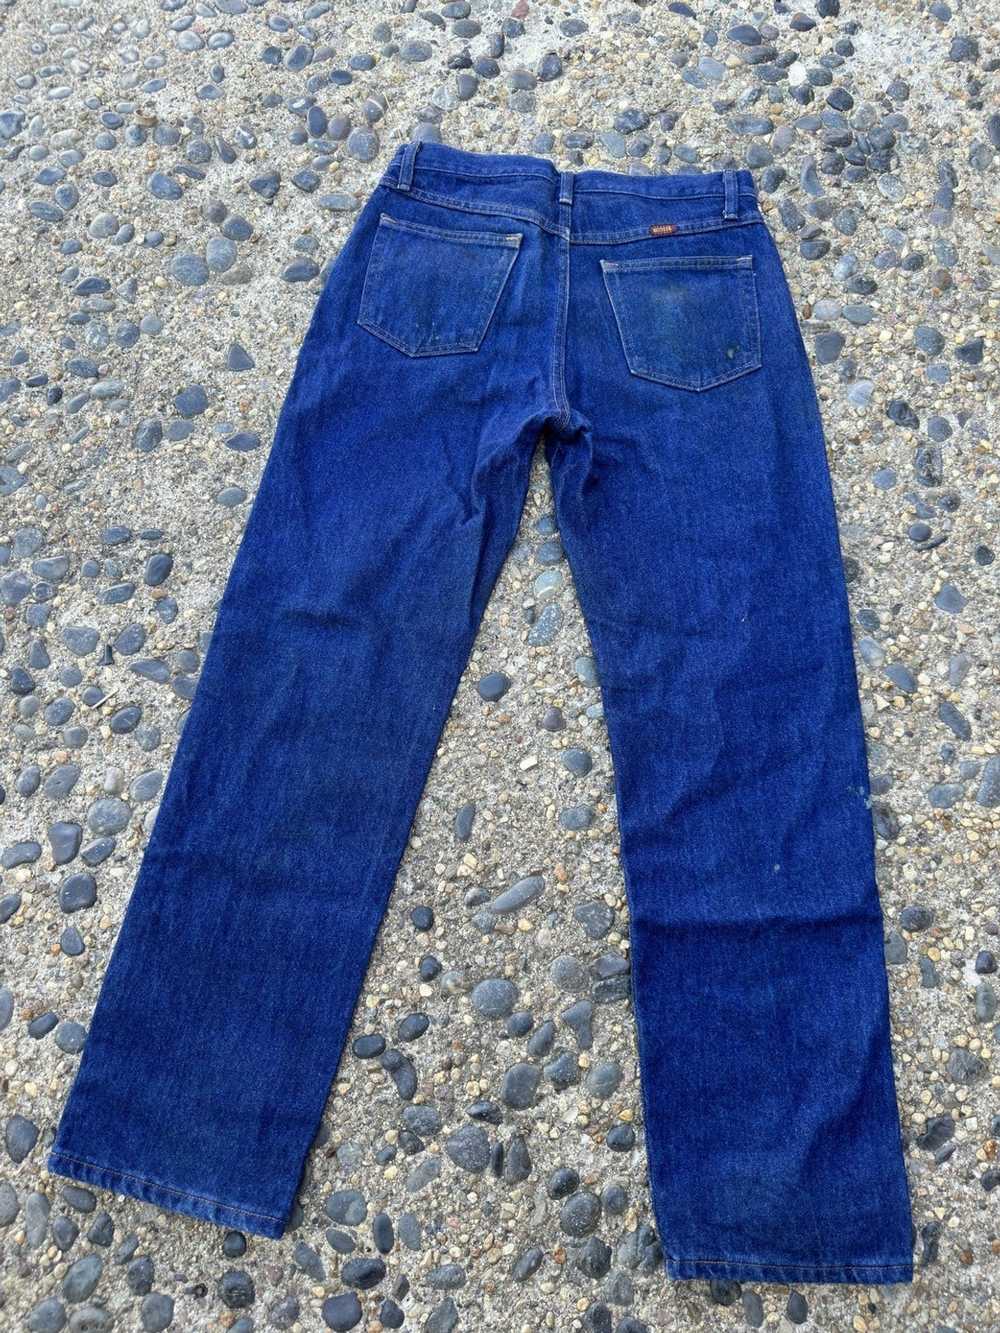 Rustler × Vintage Vintage Rustler Jeans Size 31x30 - image 8